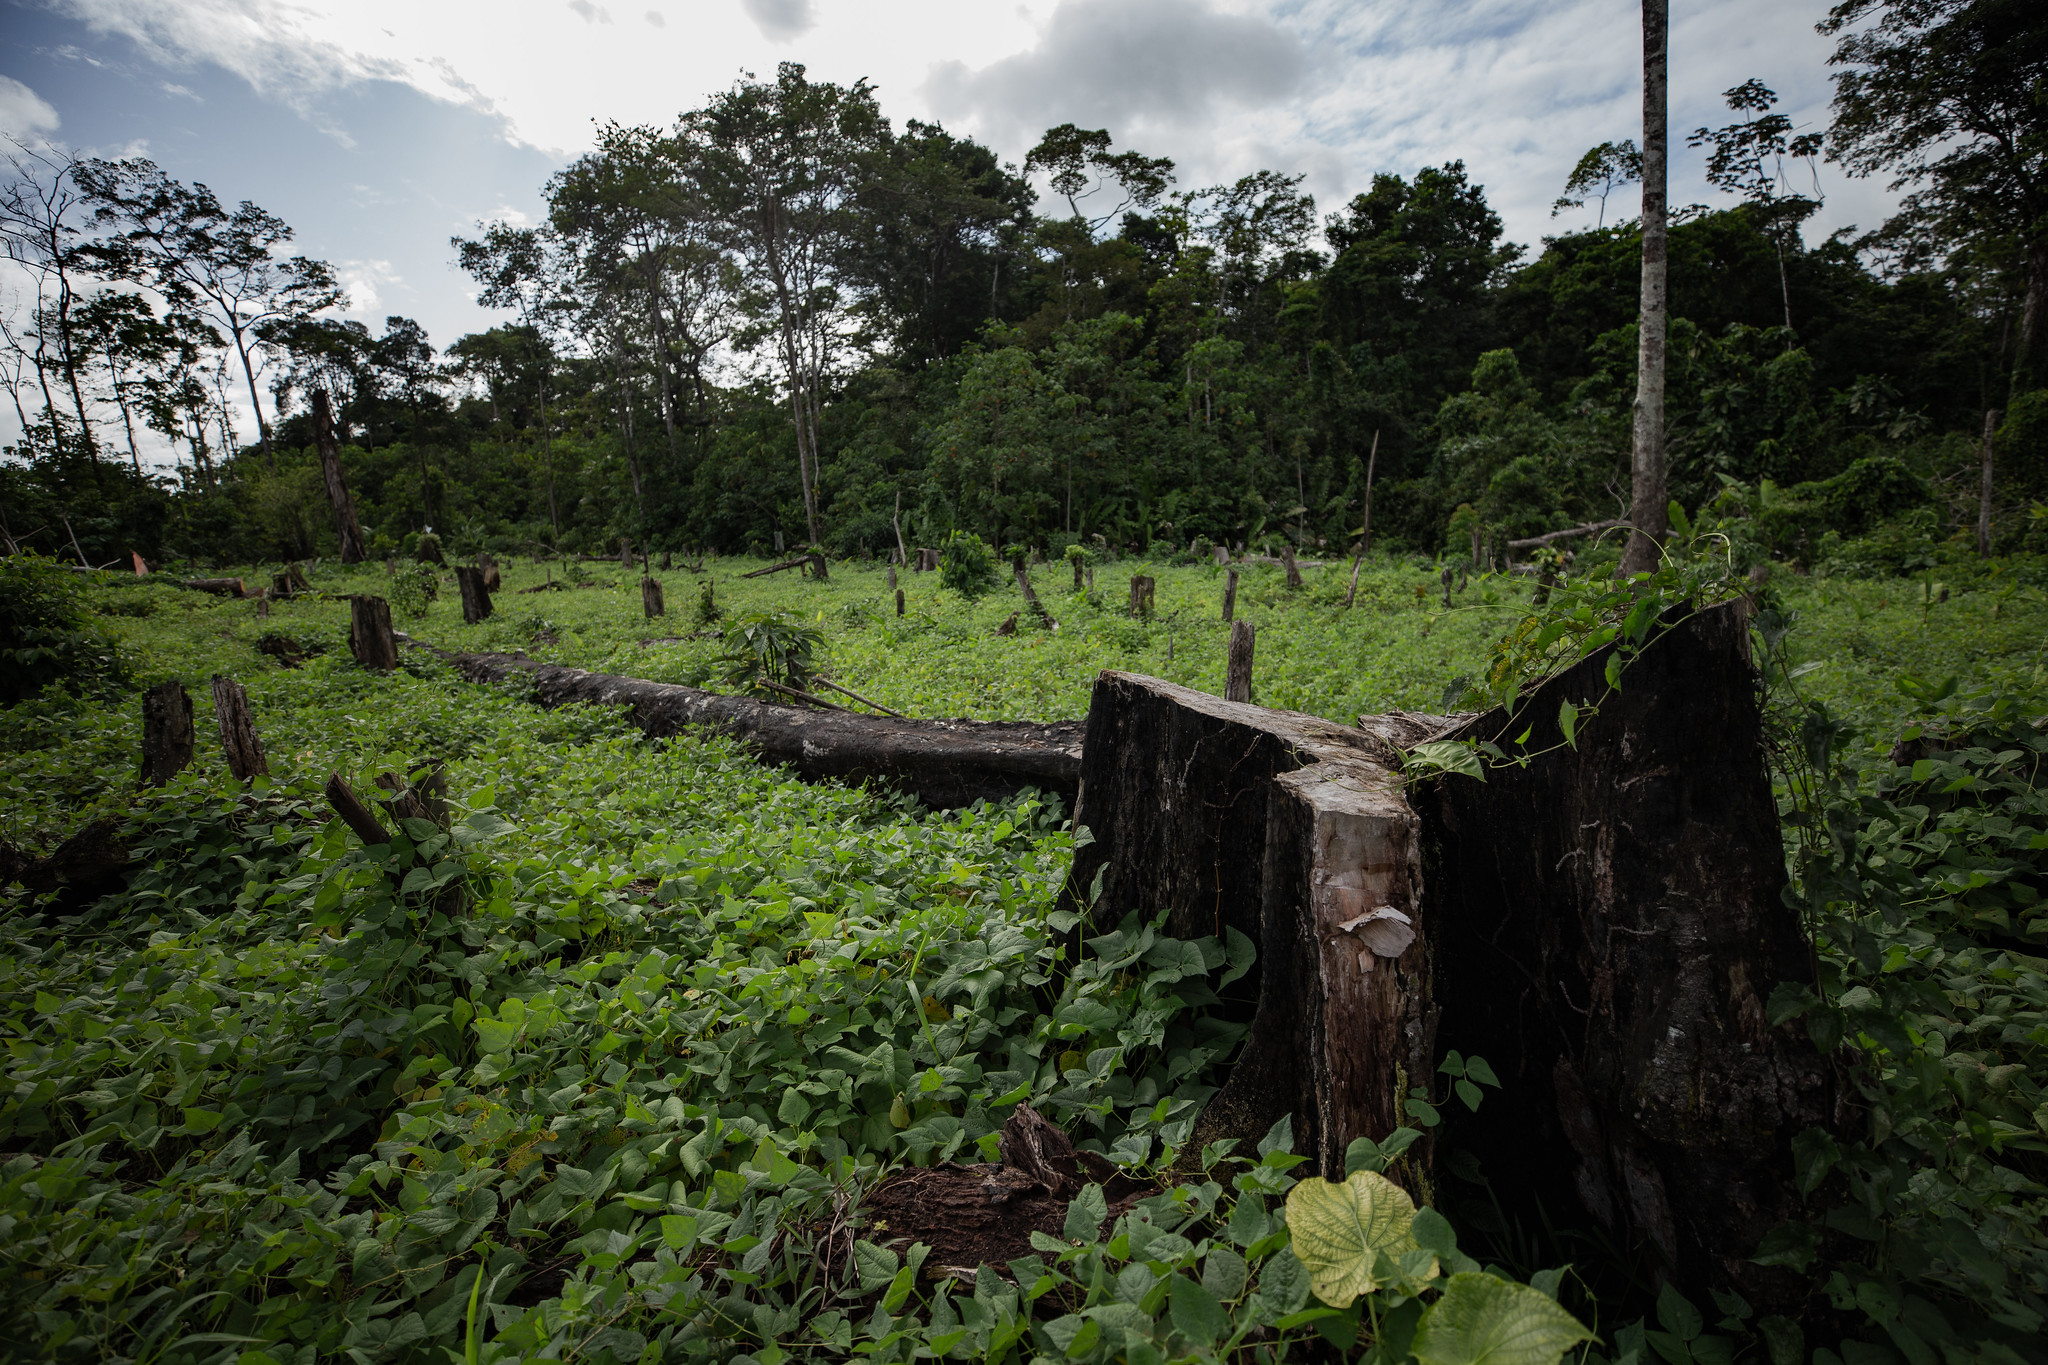 Prohibición del régimen a investigaciones sobre biodiversidad detendrá avance científico nicaragüense